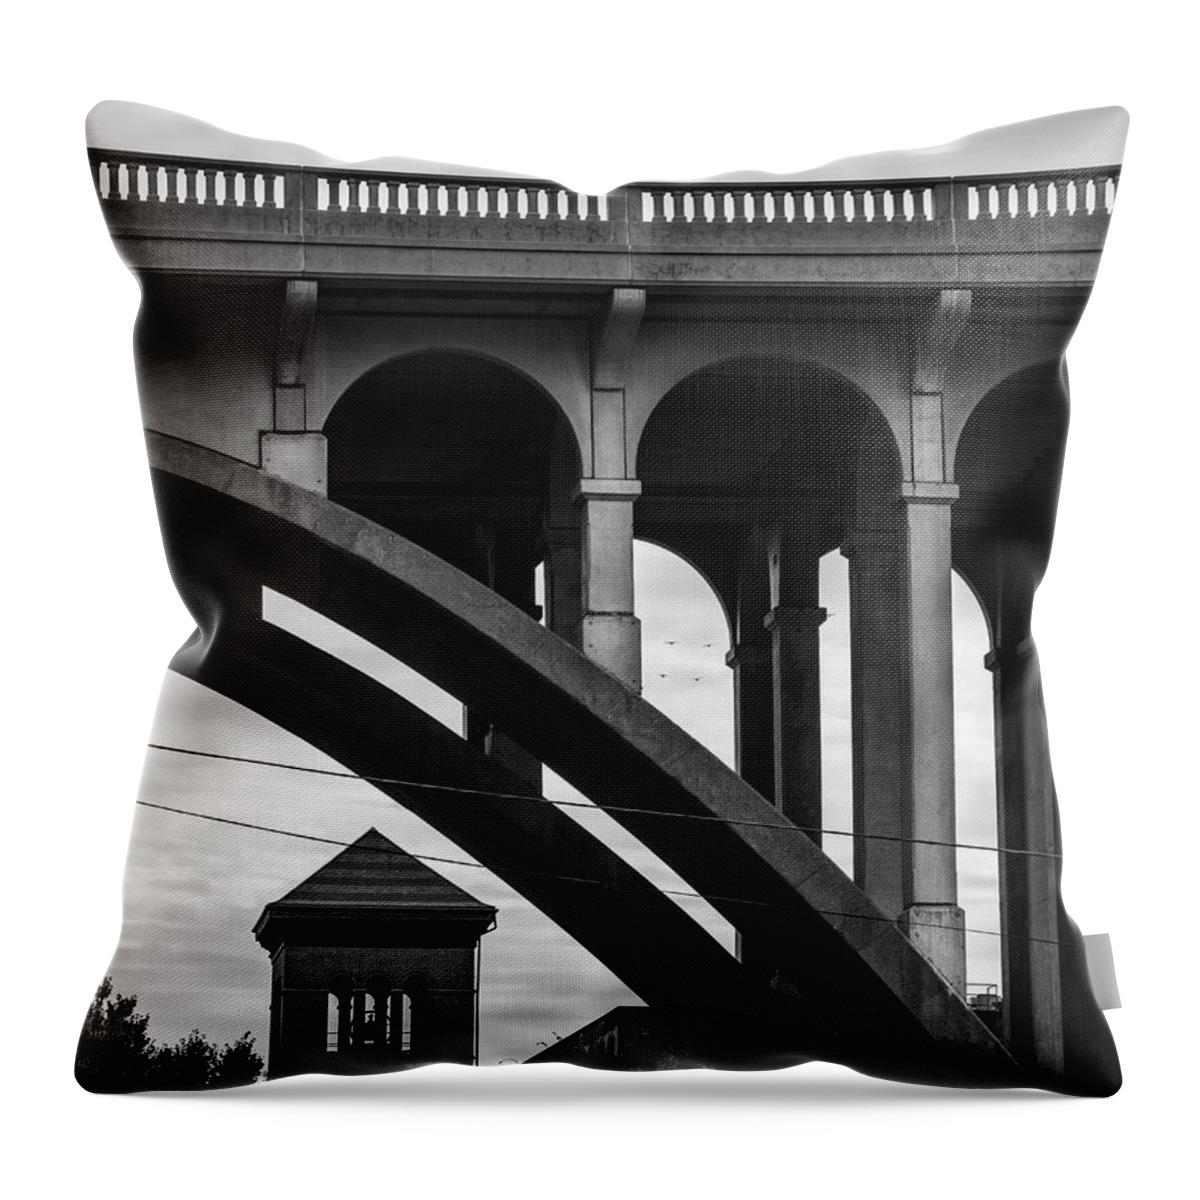 Ashton Throw Pillow featuring the photograph Ashton Viaduct I BW by David Gordon